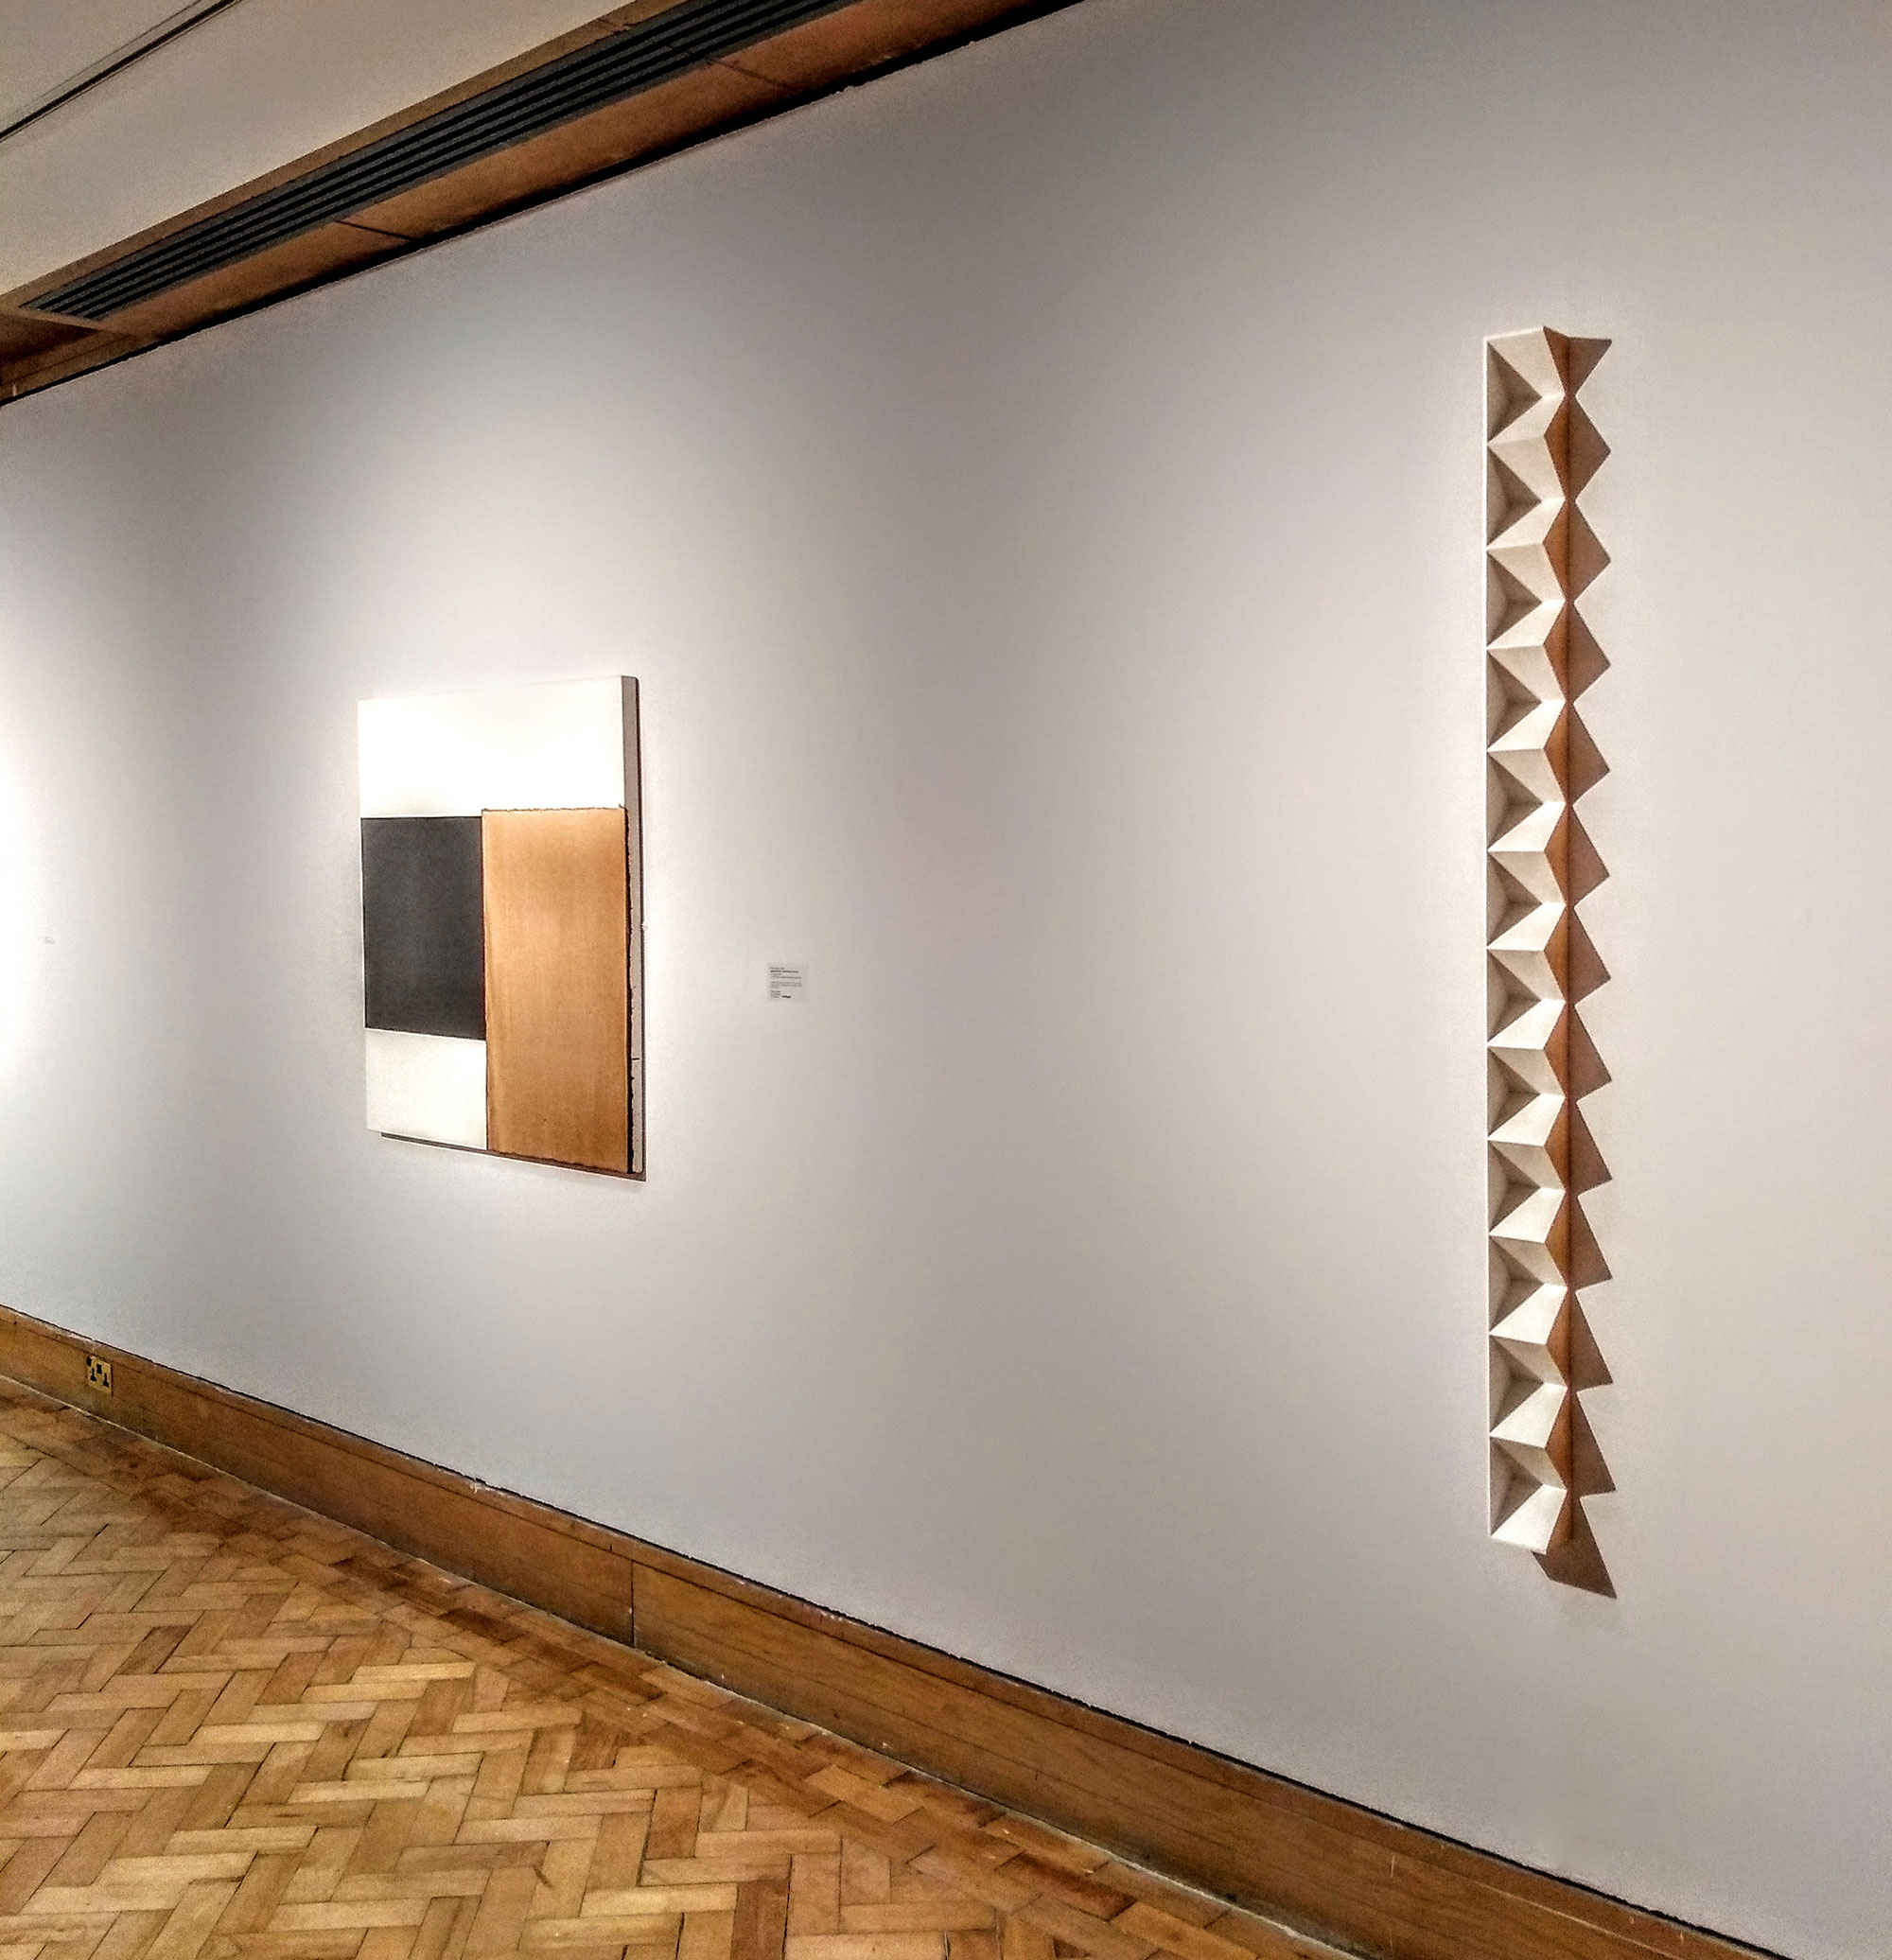 Kenneth Dingwall, For Paul Overy, 2019, casein on basswood, 152cm x 8cm x 7cm, City Art Centre Edinburgh, (Callum Innes to left)